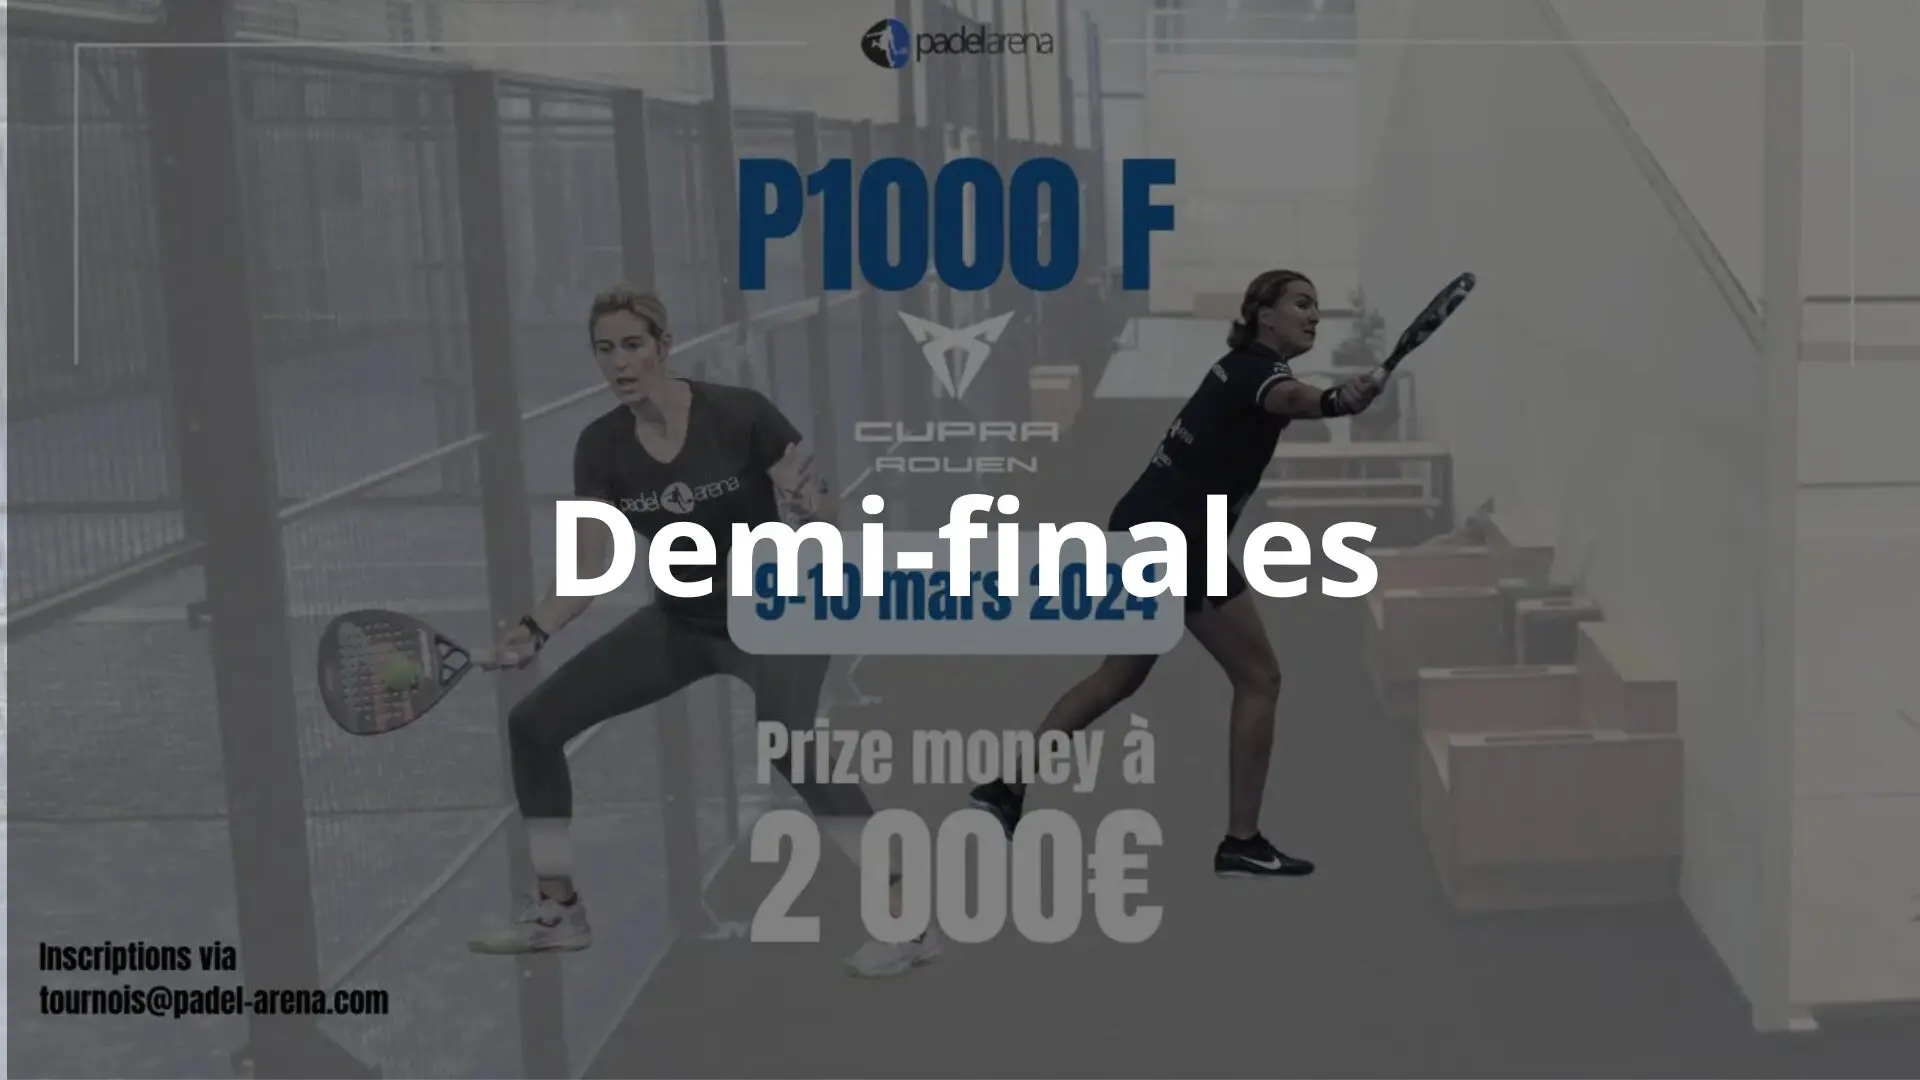 P1000 Padel Arena Cupra Rouen – Inizio delle semifinali in diretta!